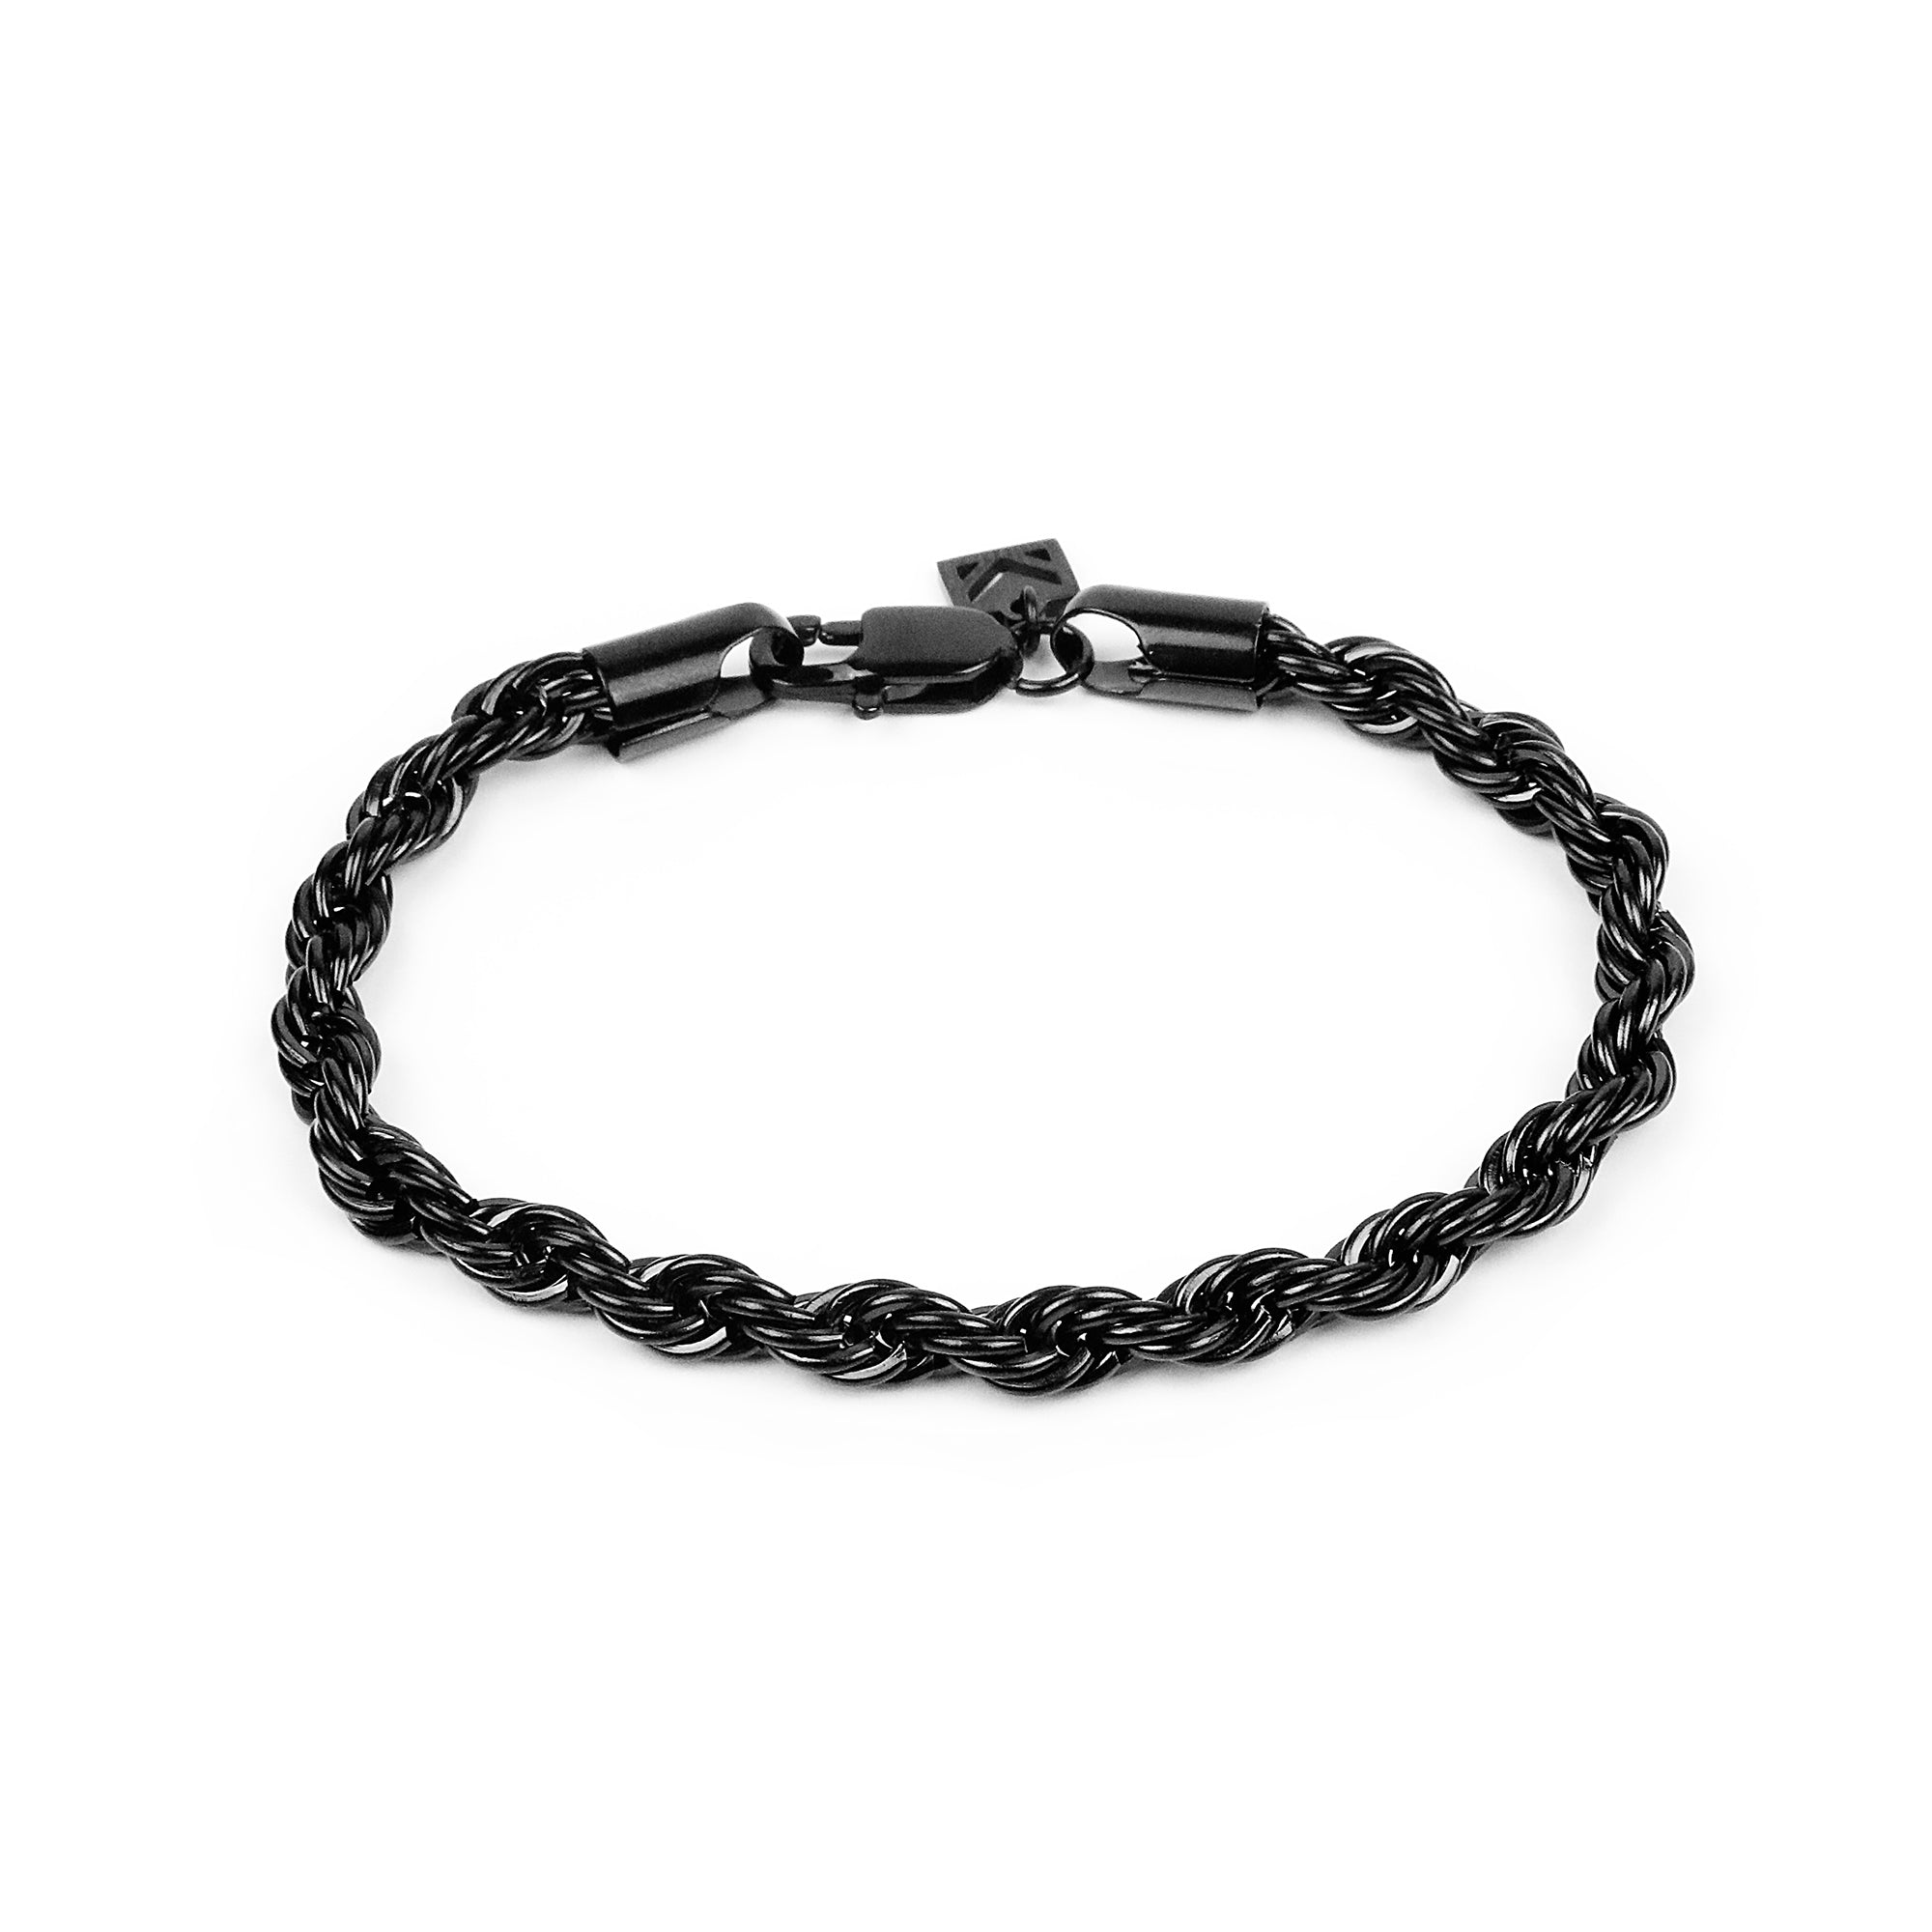 Rope Chain Bracelet - Black 6mm